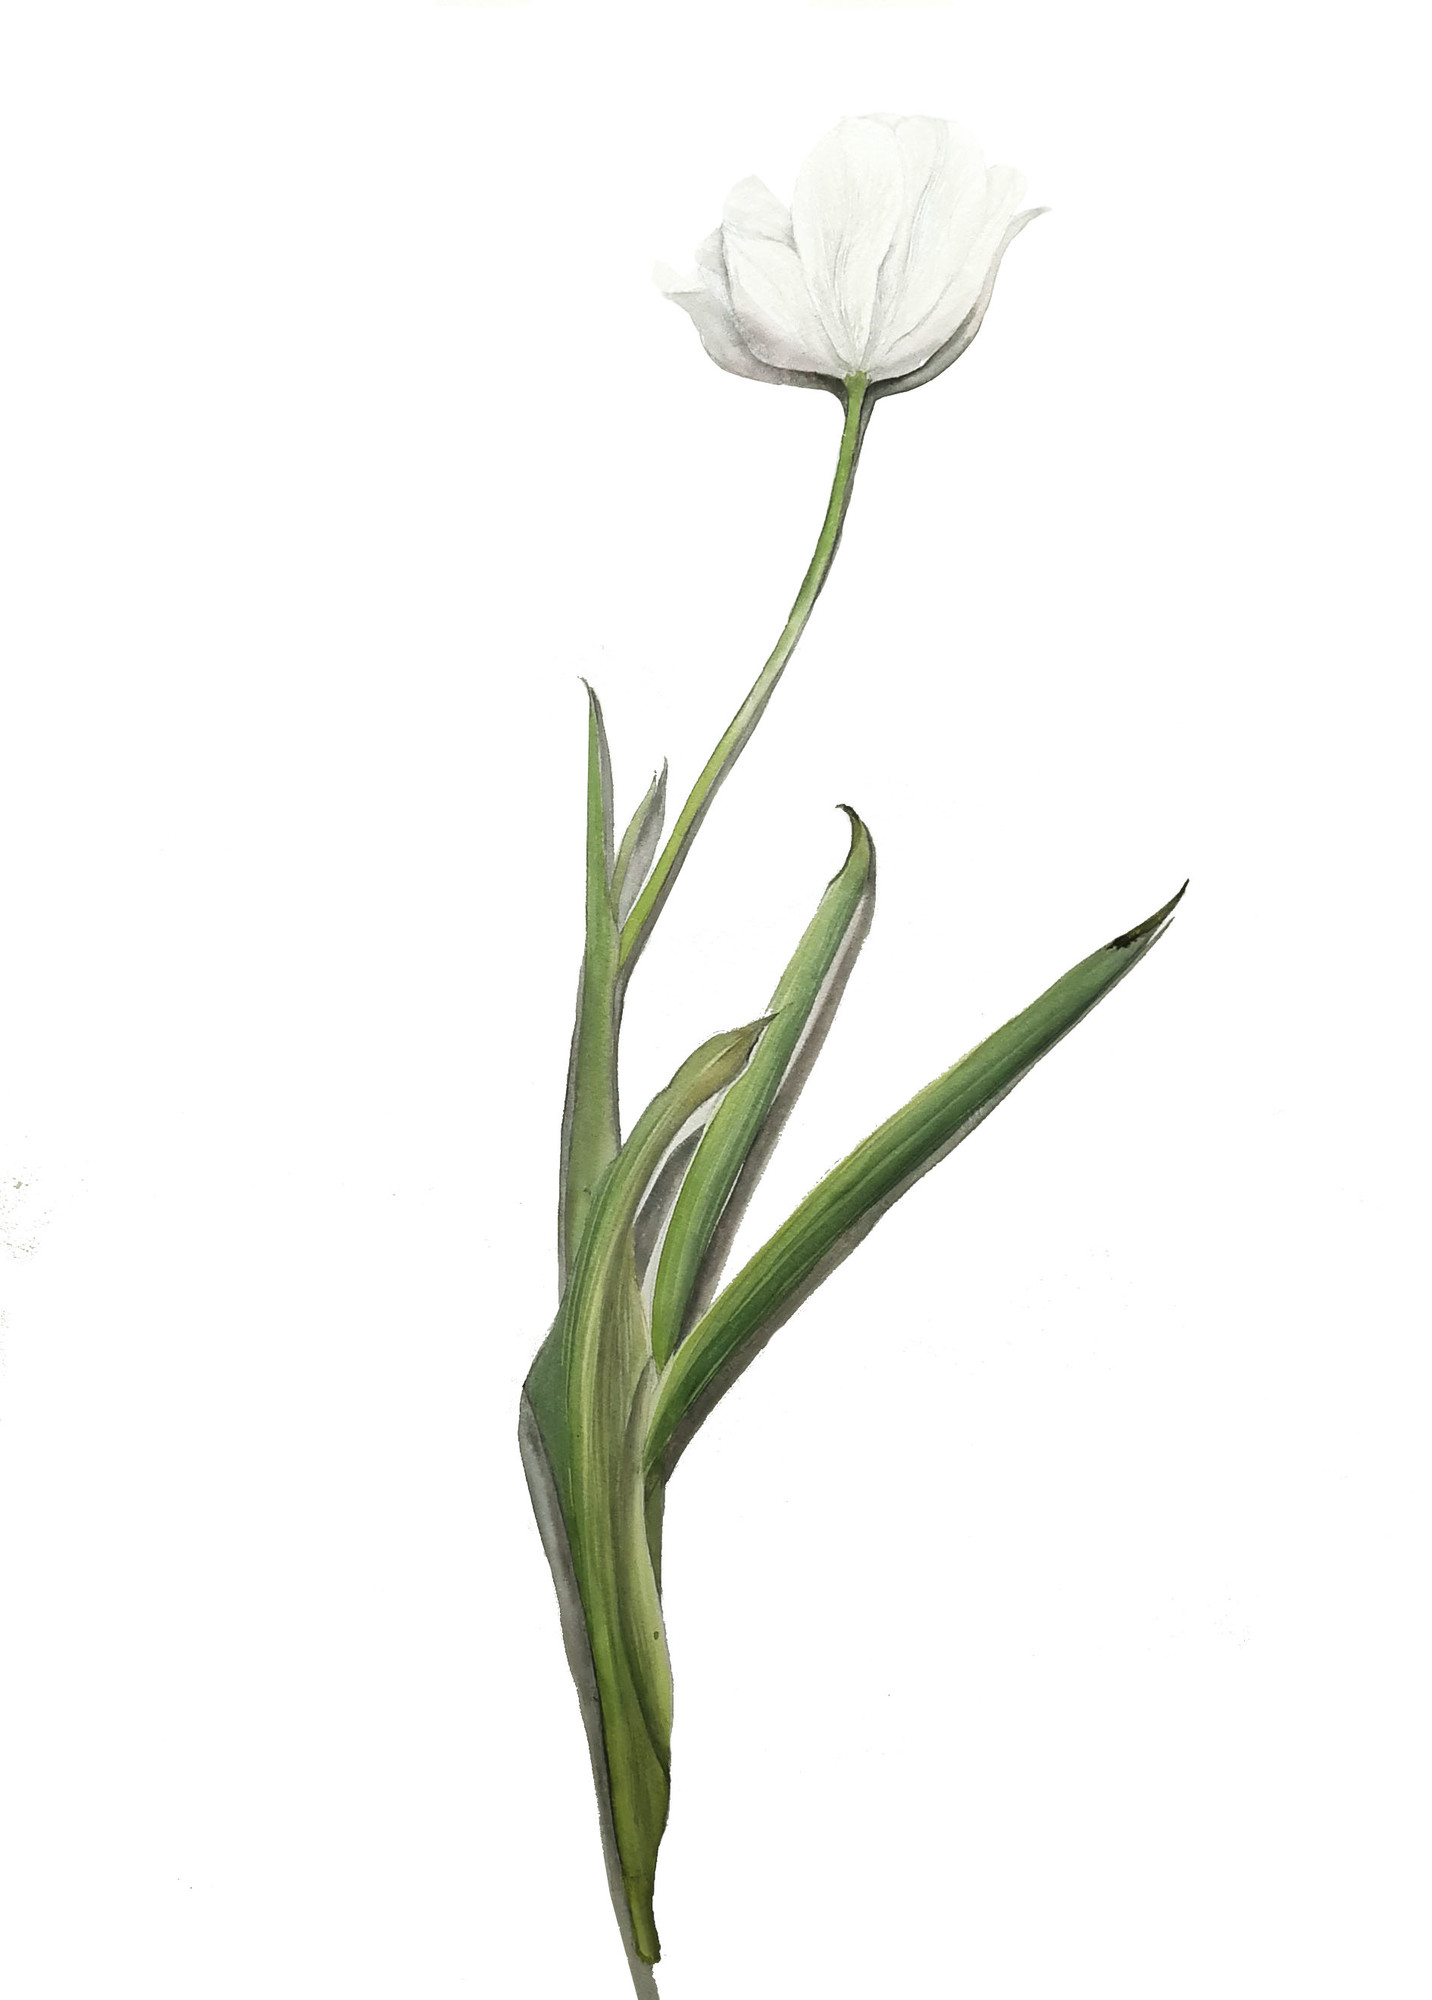 white tulip